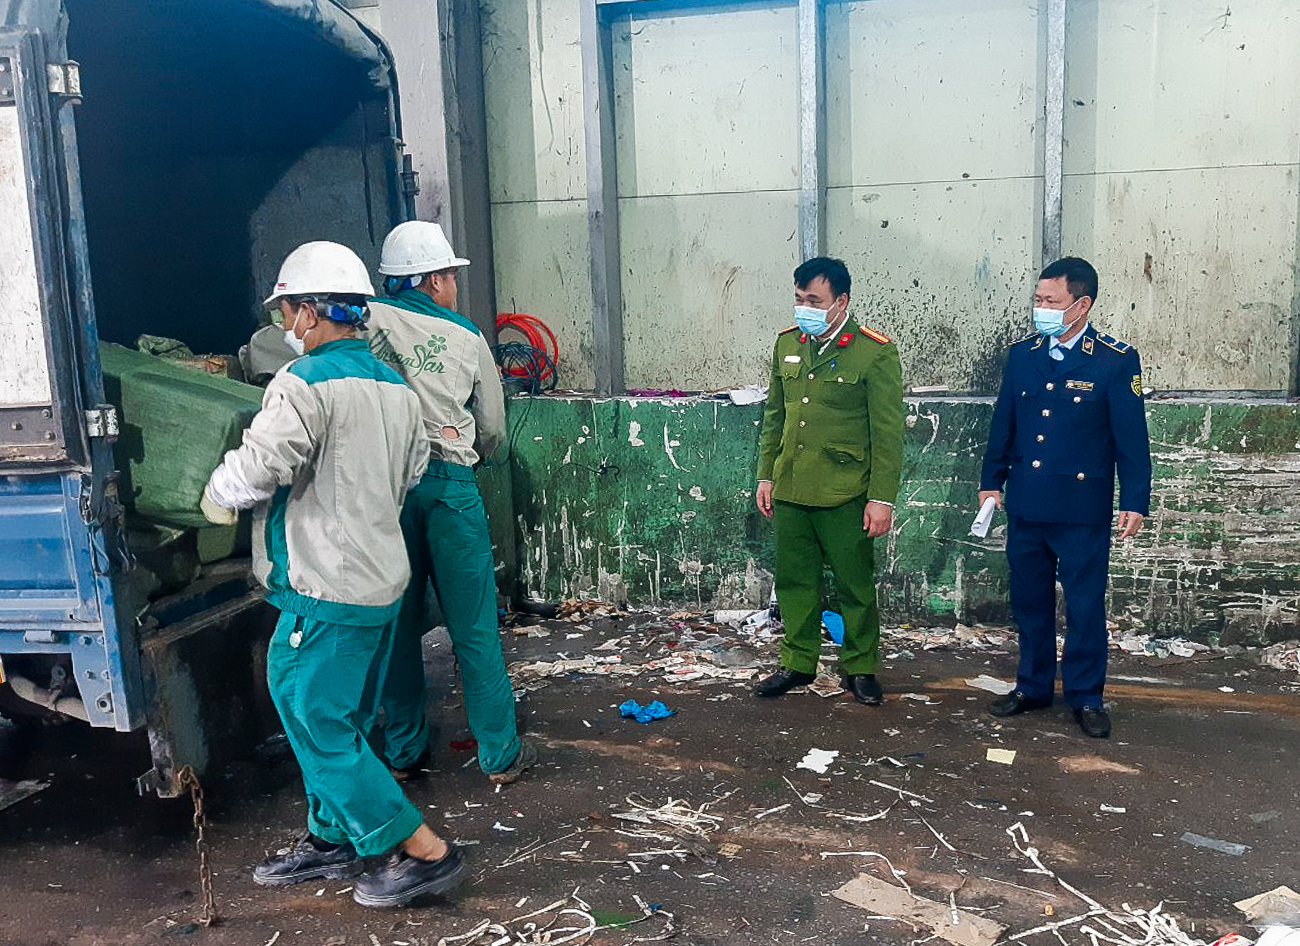 An ninh - Hình sự - Bắc Ninh: Xử lý 2.500kg mỡ lợn lậu